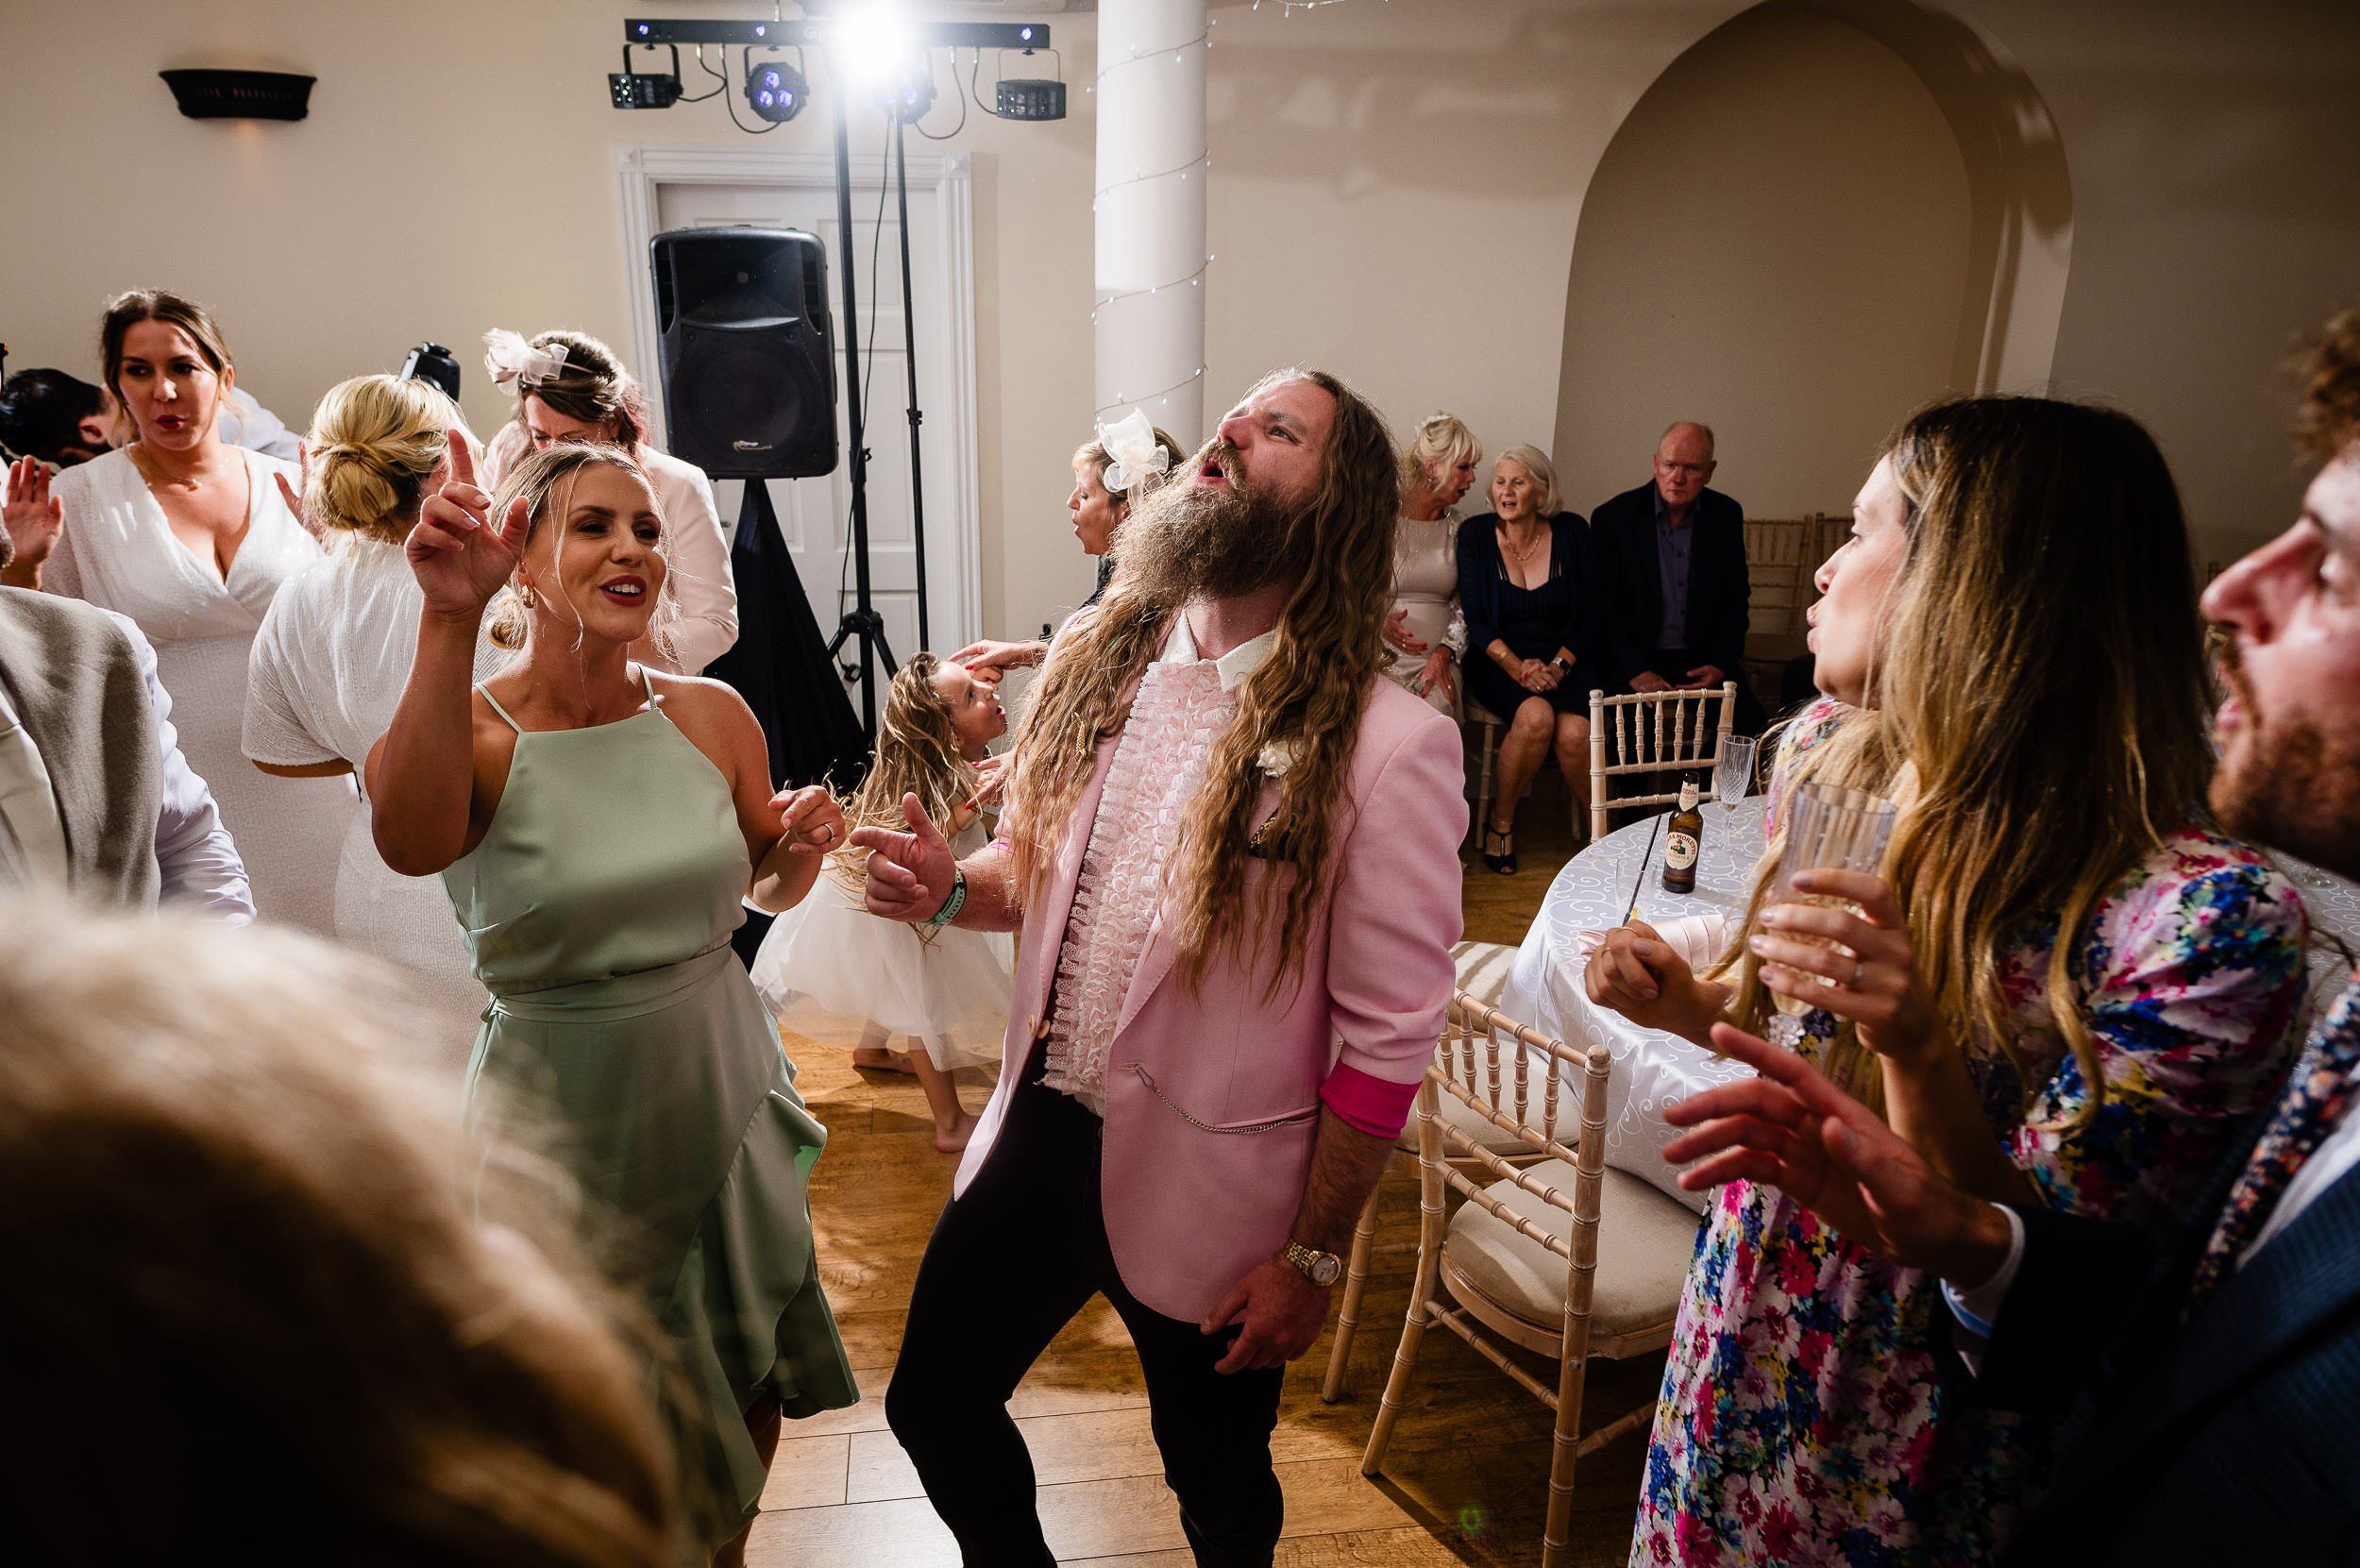 Guy in Pink jacket enjoying the wedding dancefloor